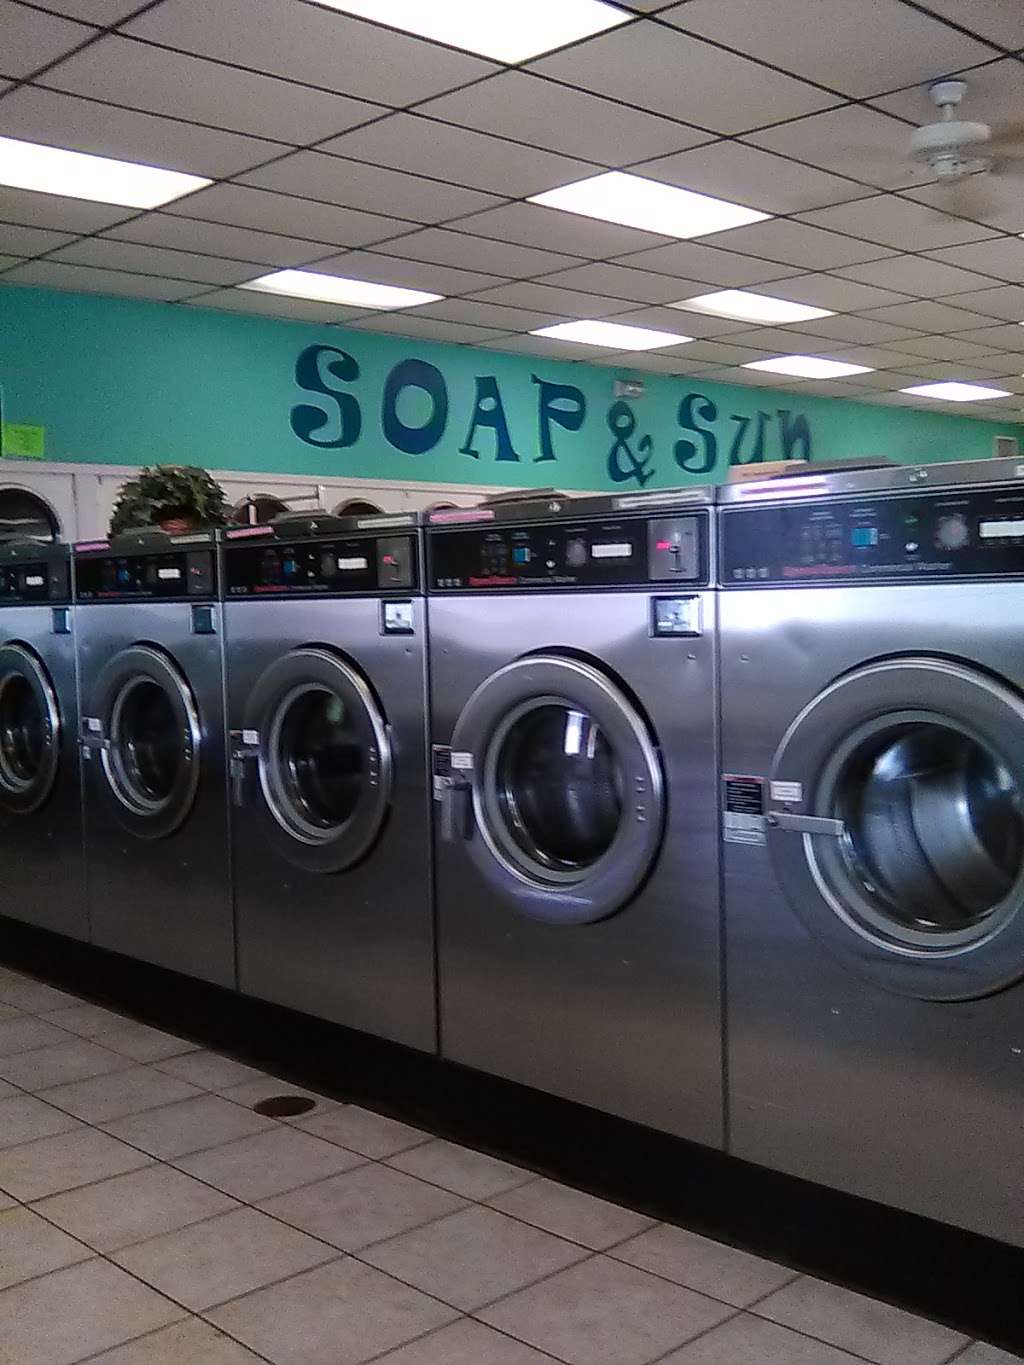 Soap & Sun Laundry & Tan | 310 E Morgan St, Martinsville, IN 46151 | Phone: (765) 342-4306